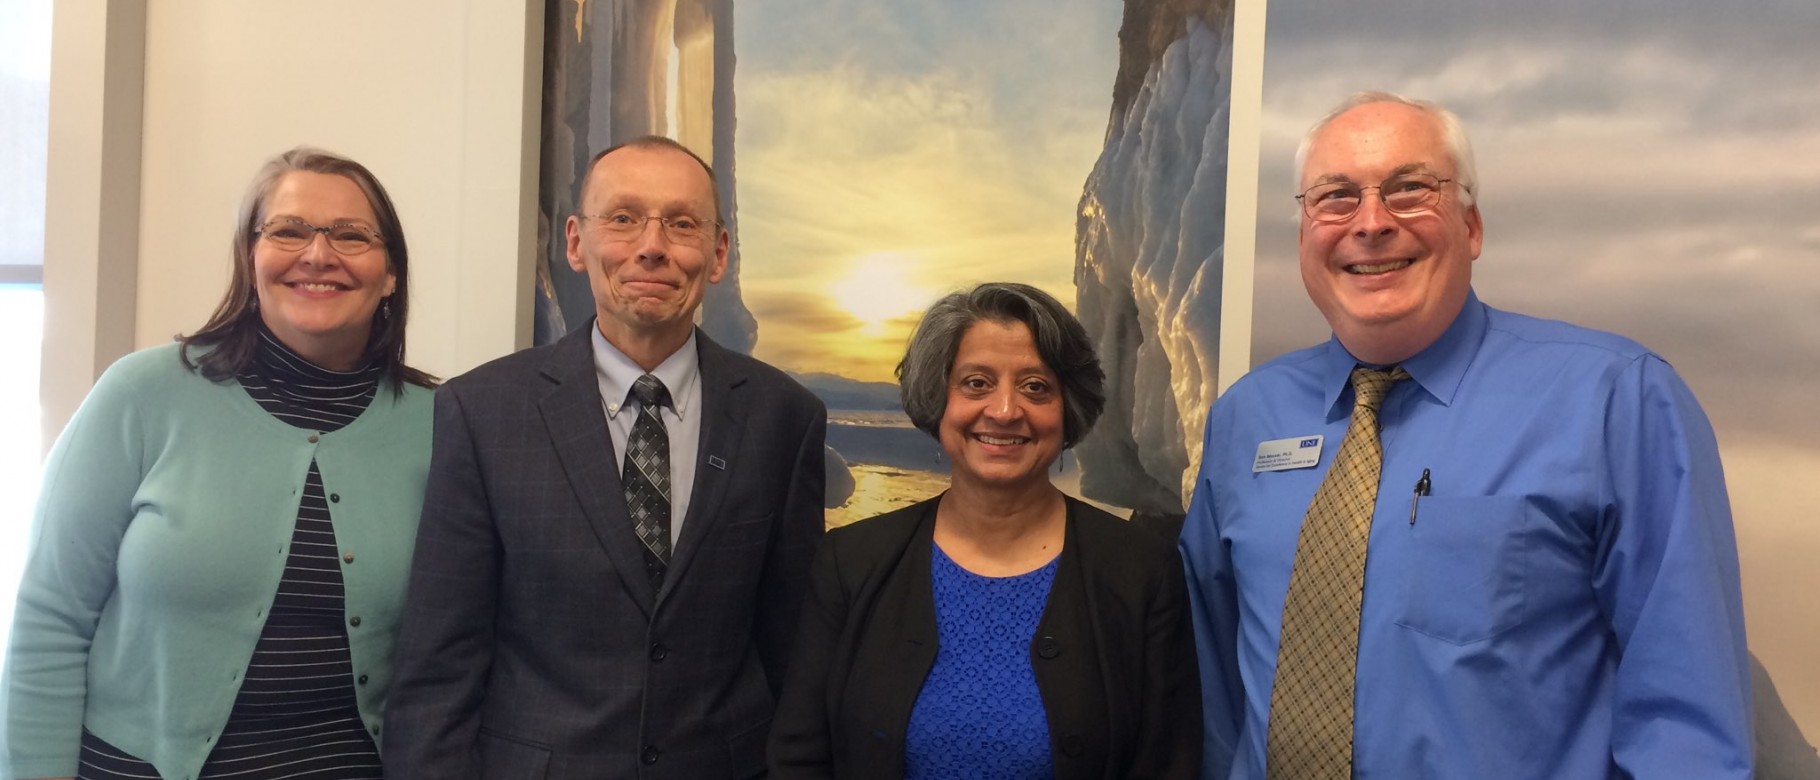 Karen Houseknecht, Michael Sheldon, Piali De and Tom Meuser recently met to discuss UNE's partnership with Senscio Systems 